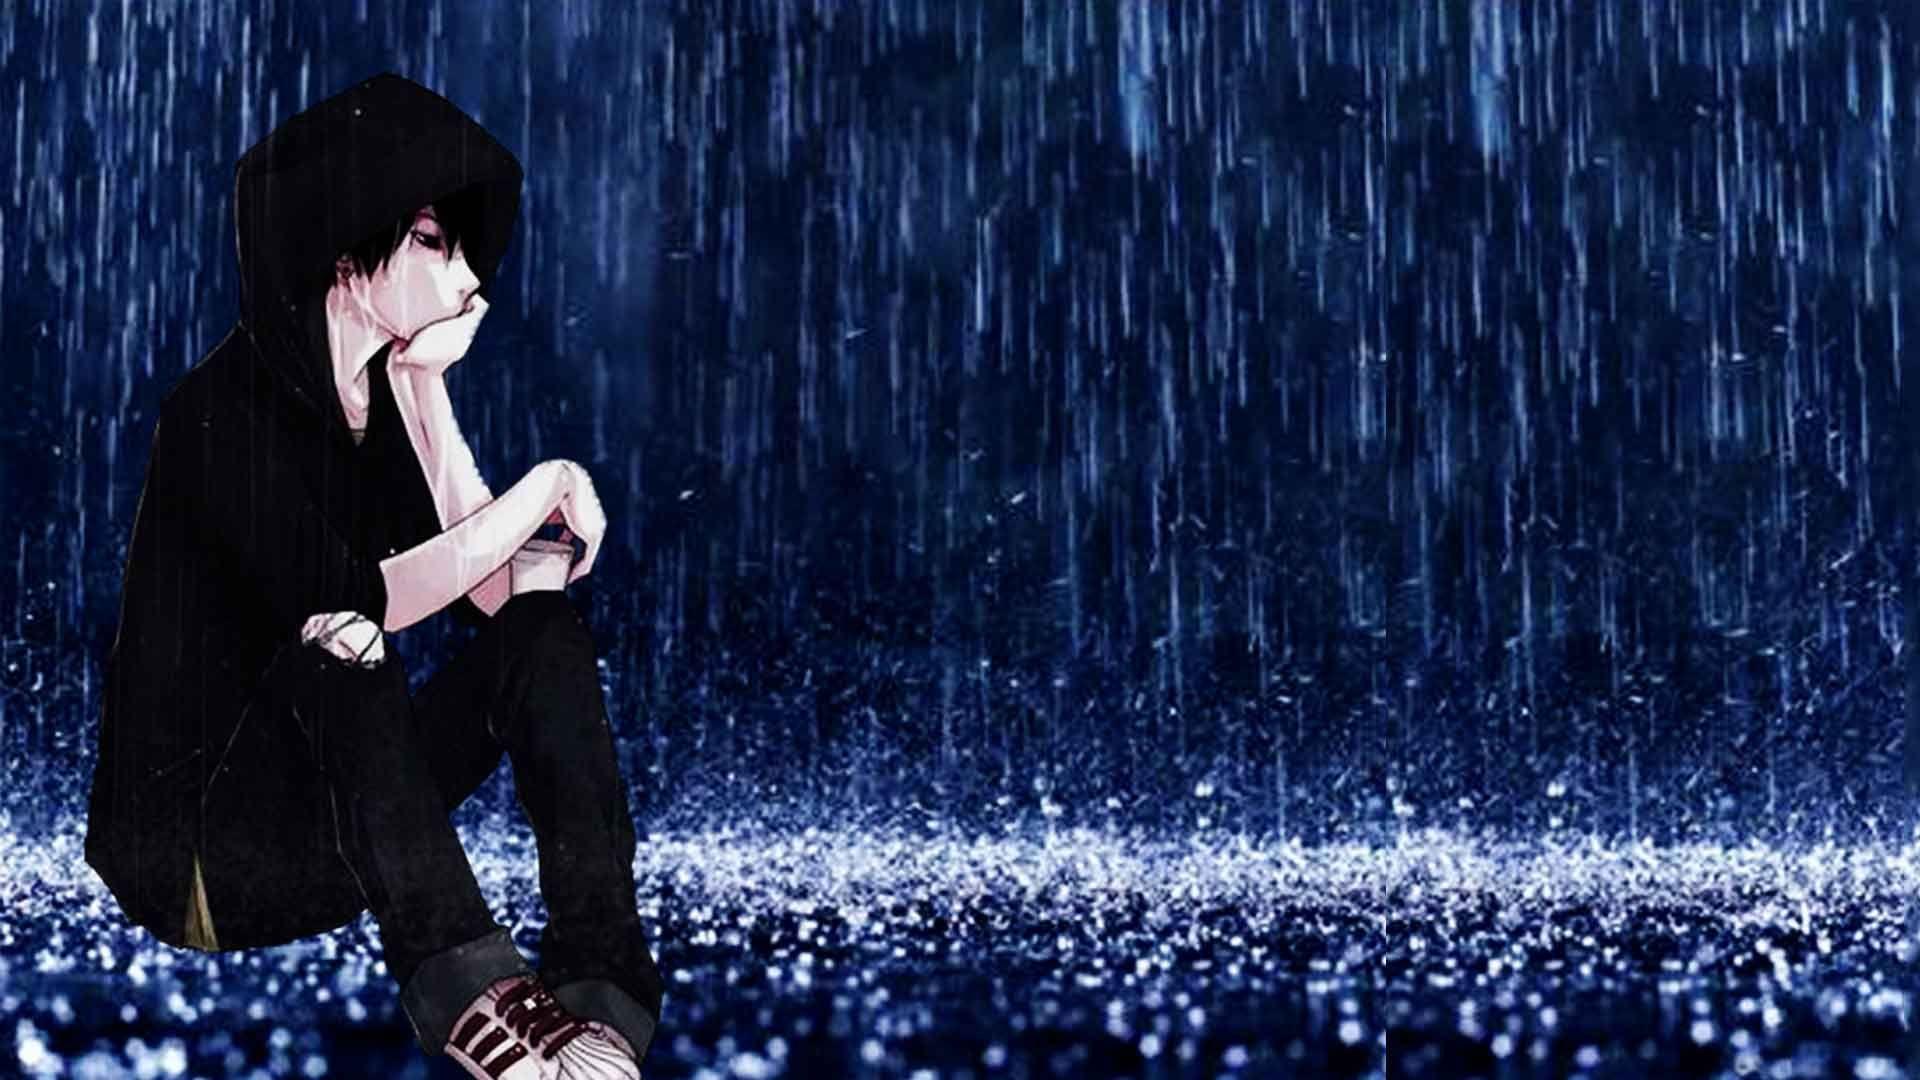 Anime Sad Rain Wallpapers